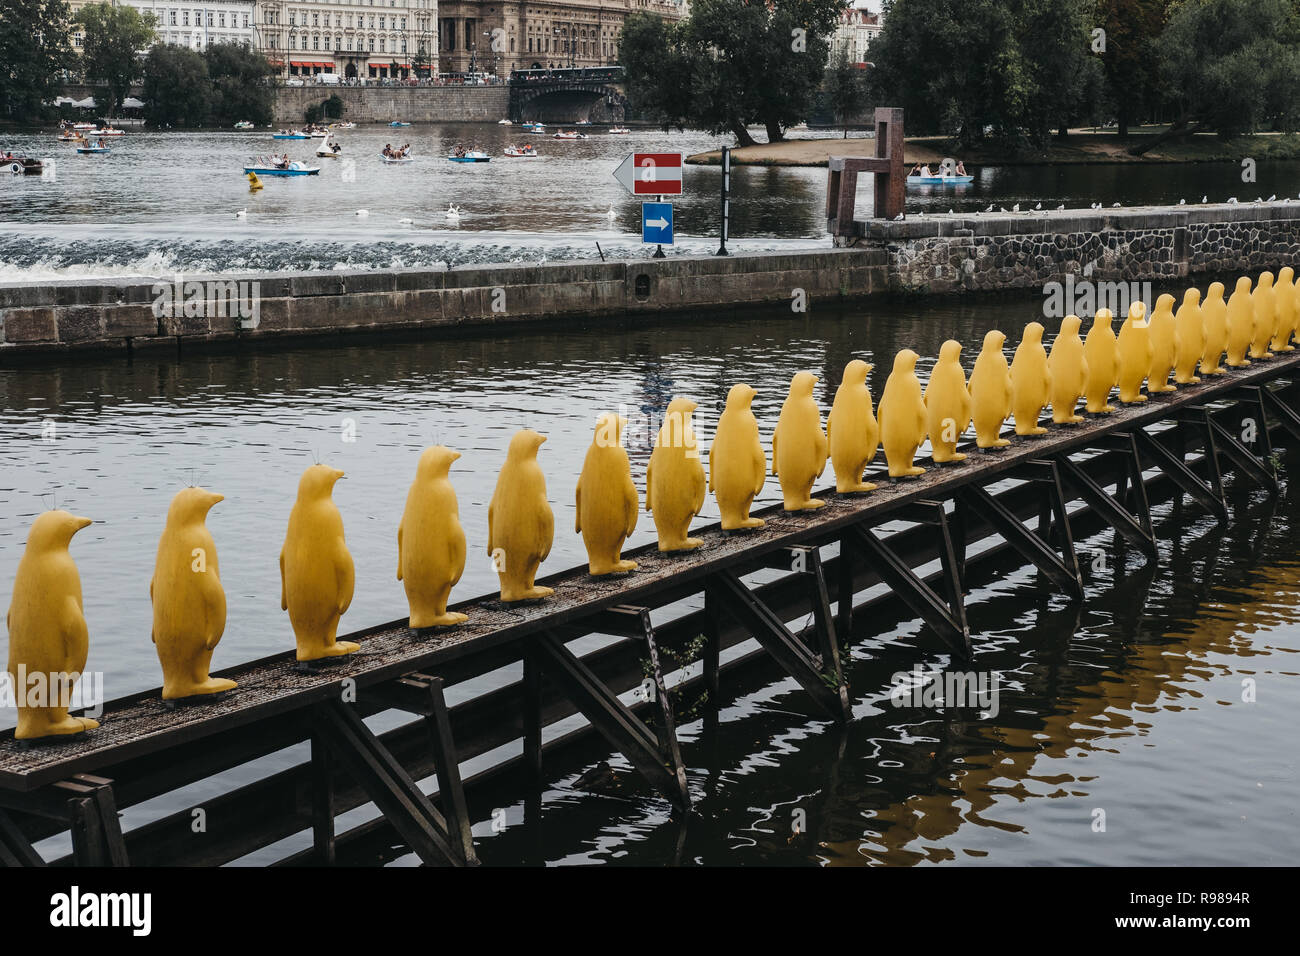 Prag, Tschechische Republik - 26 August, 2018: Die pinguine Installation durch die Rissbildung Art Gruppe bei Kampa, Prag. Die Installation wurde erstellt Stockfoto